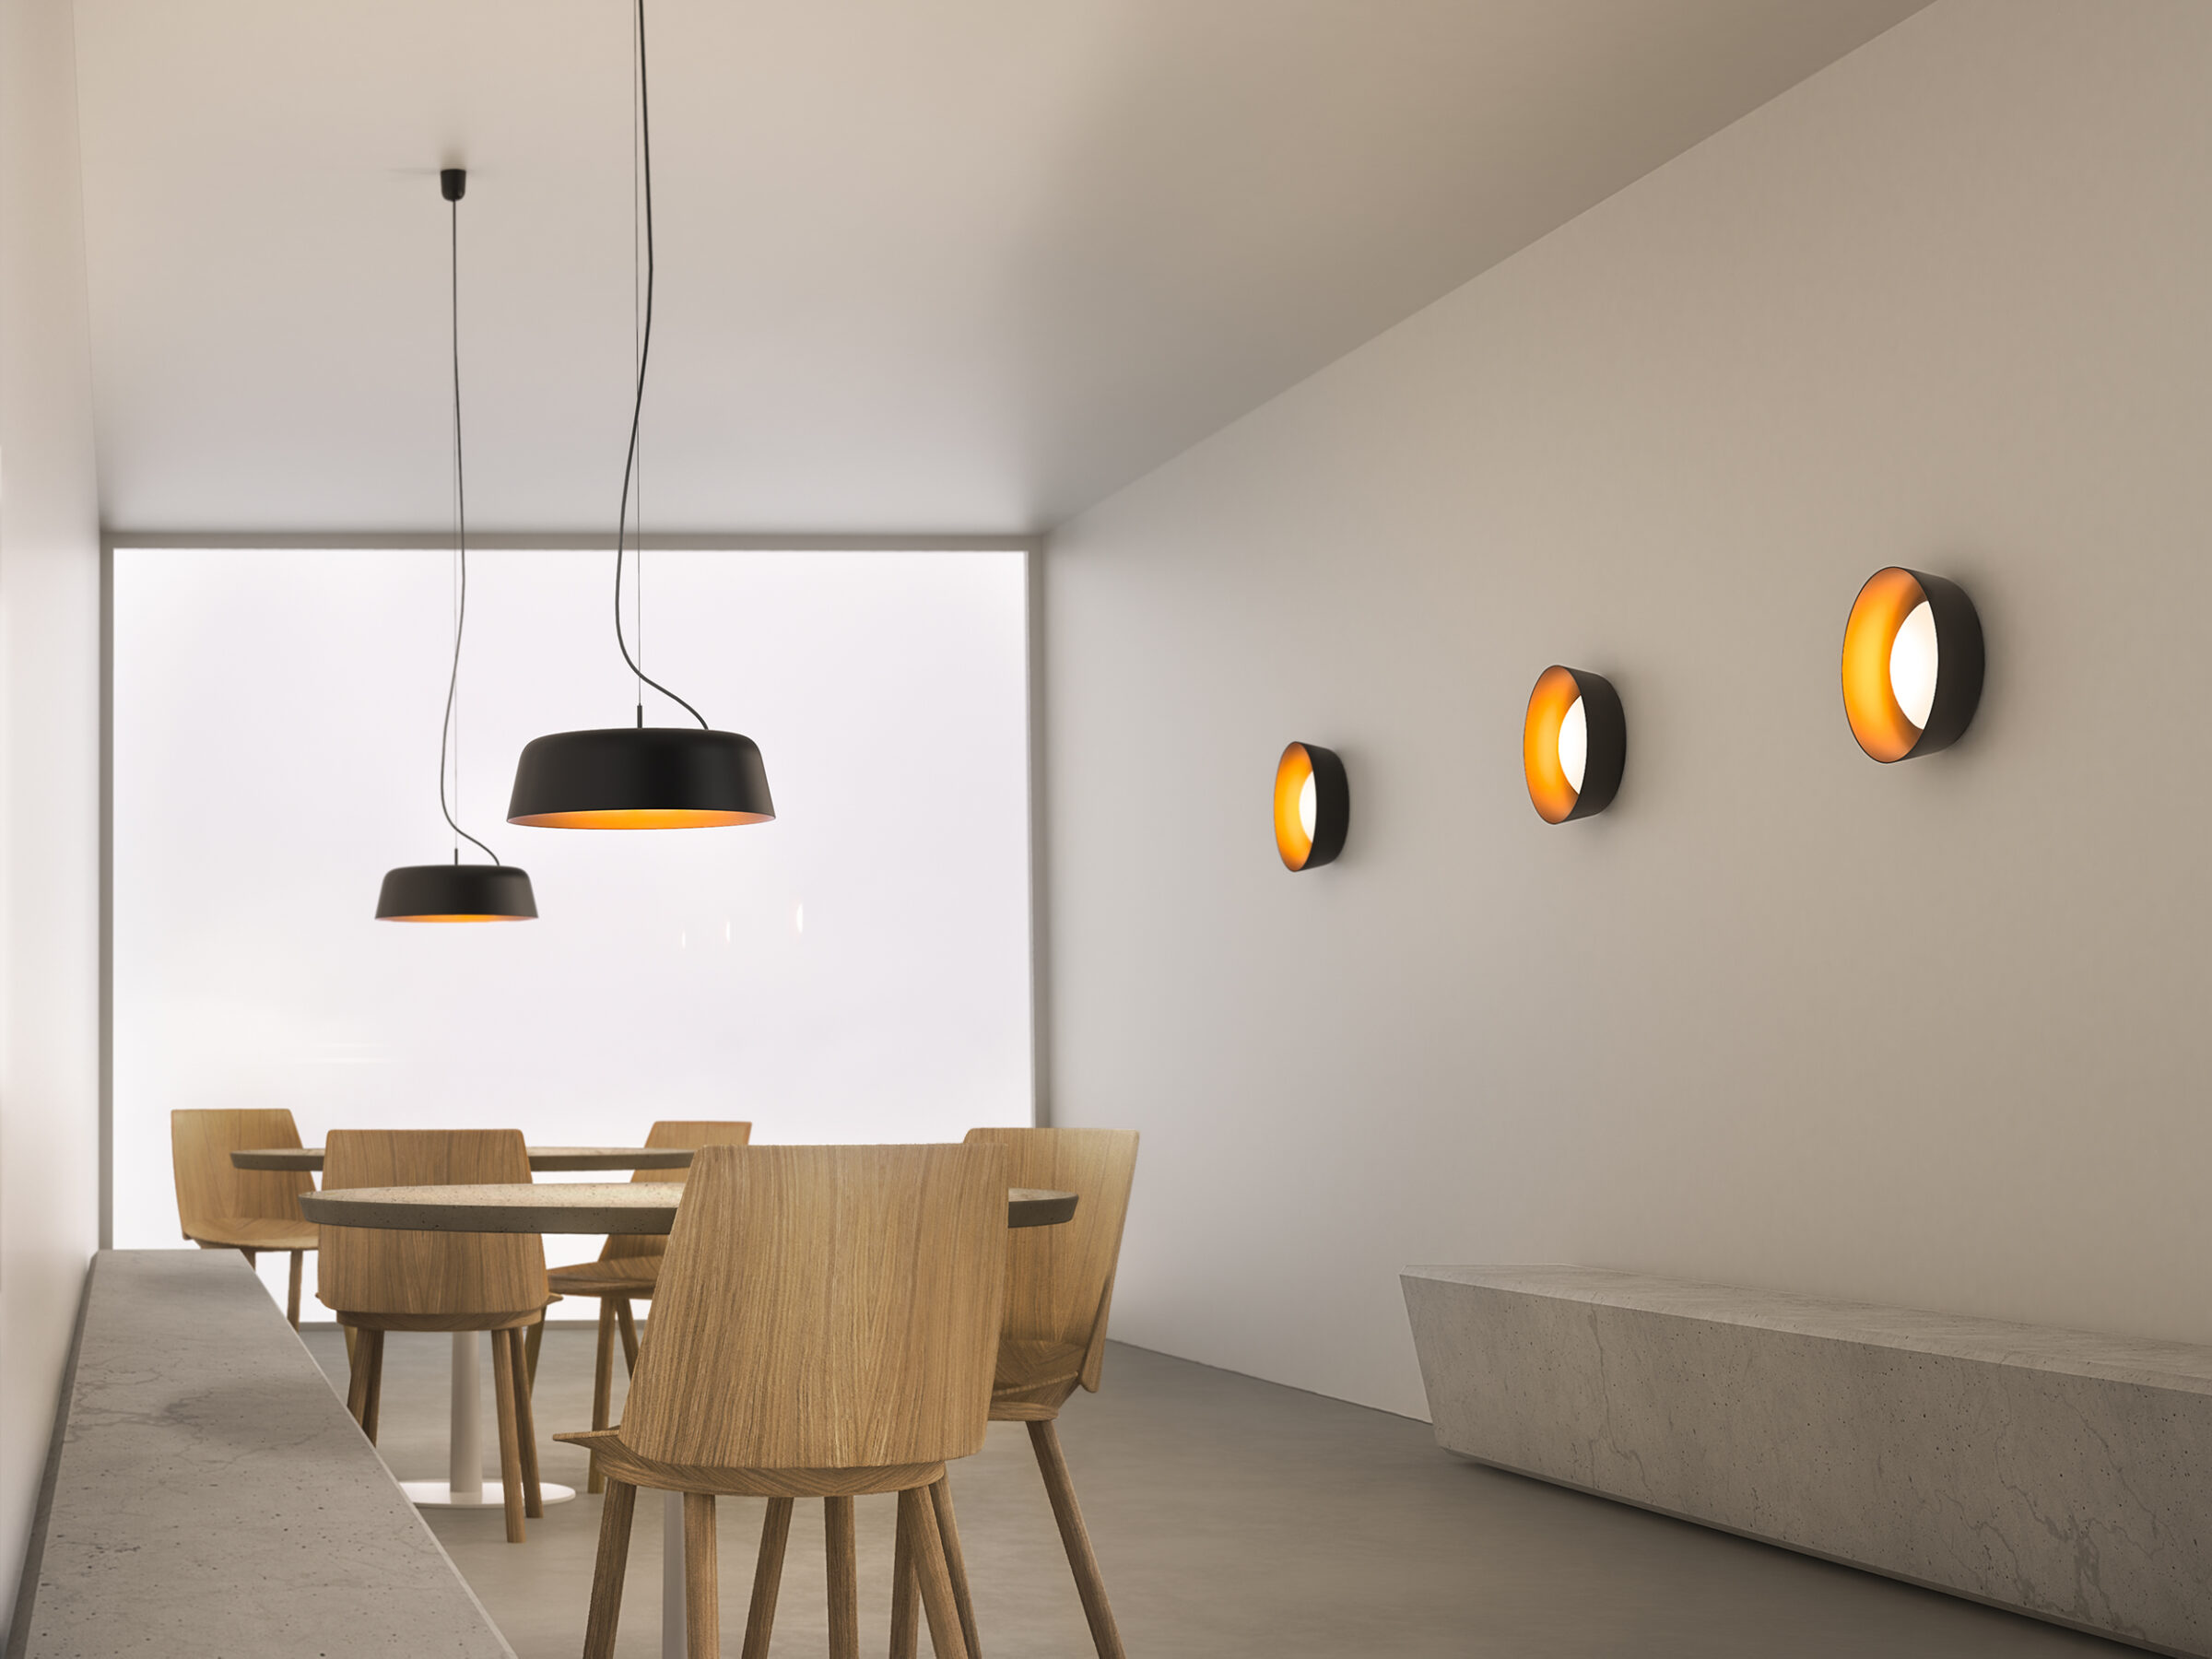 Design Cafébeleuchtung: Bowl Pendelleuchten und Wandleuchten aus Aluminium in Bicolor für ein Café Beleuchtungskonzept.